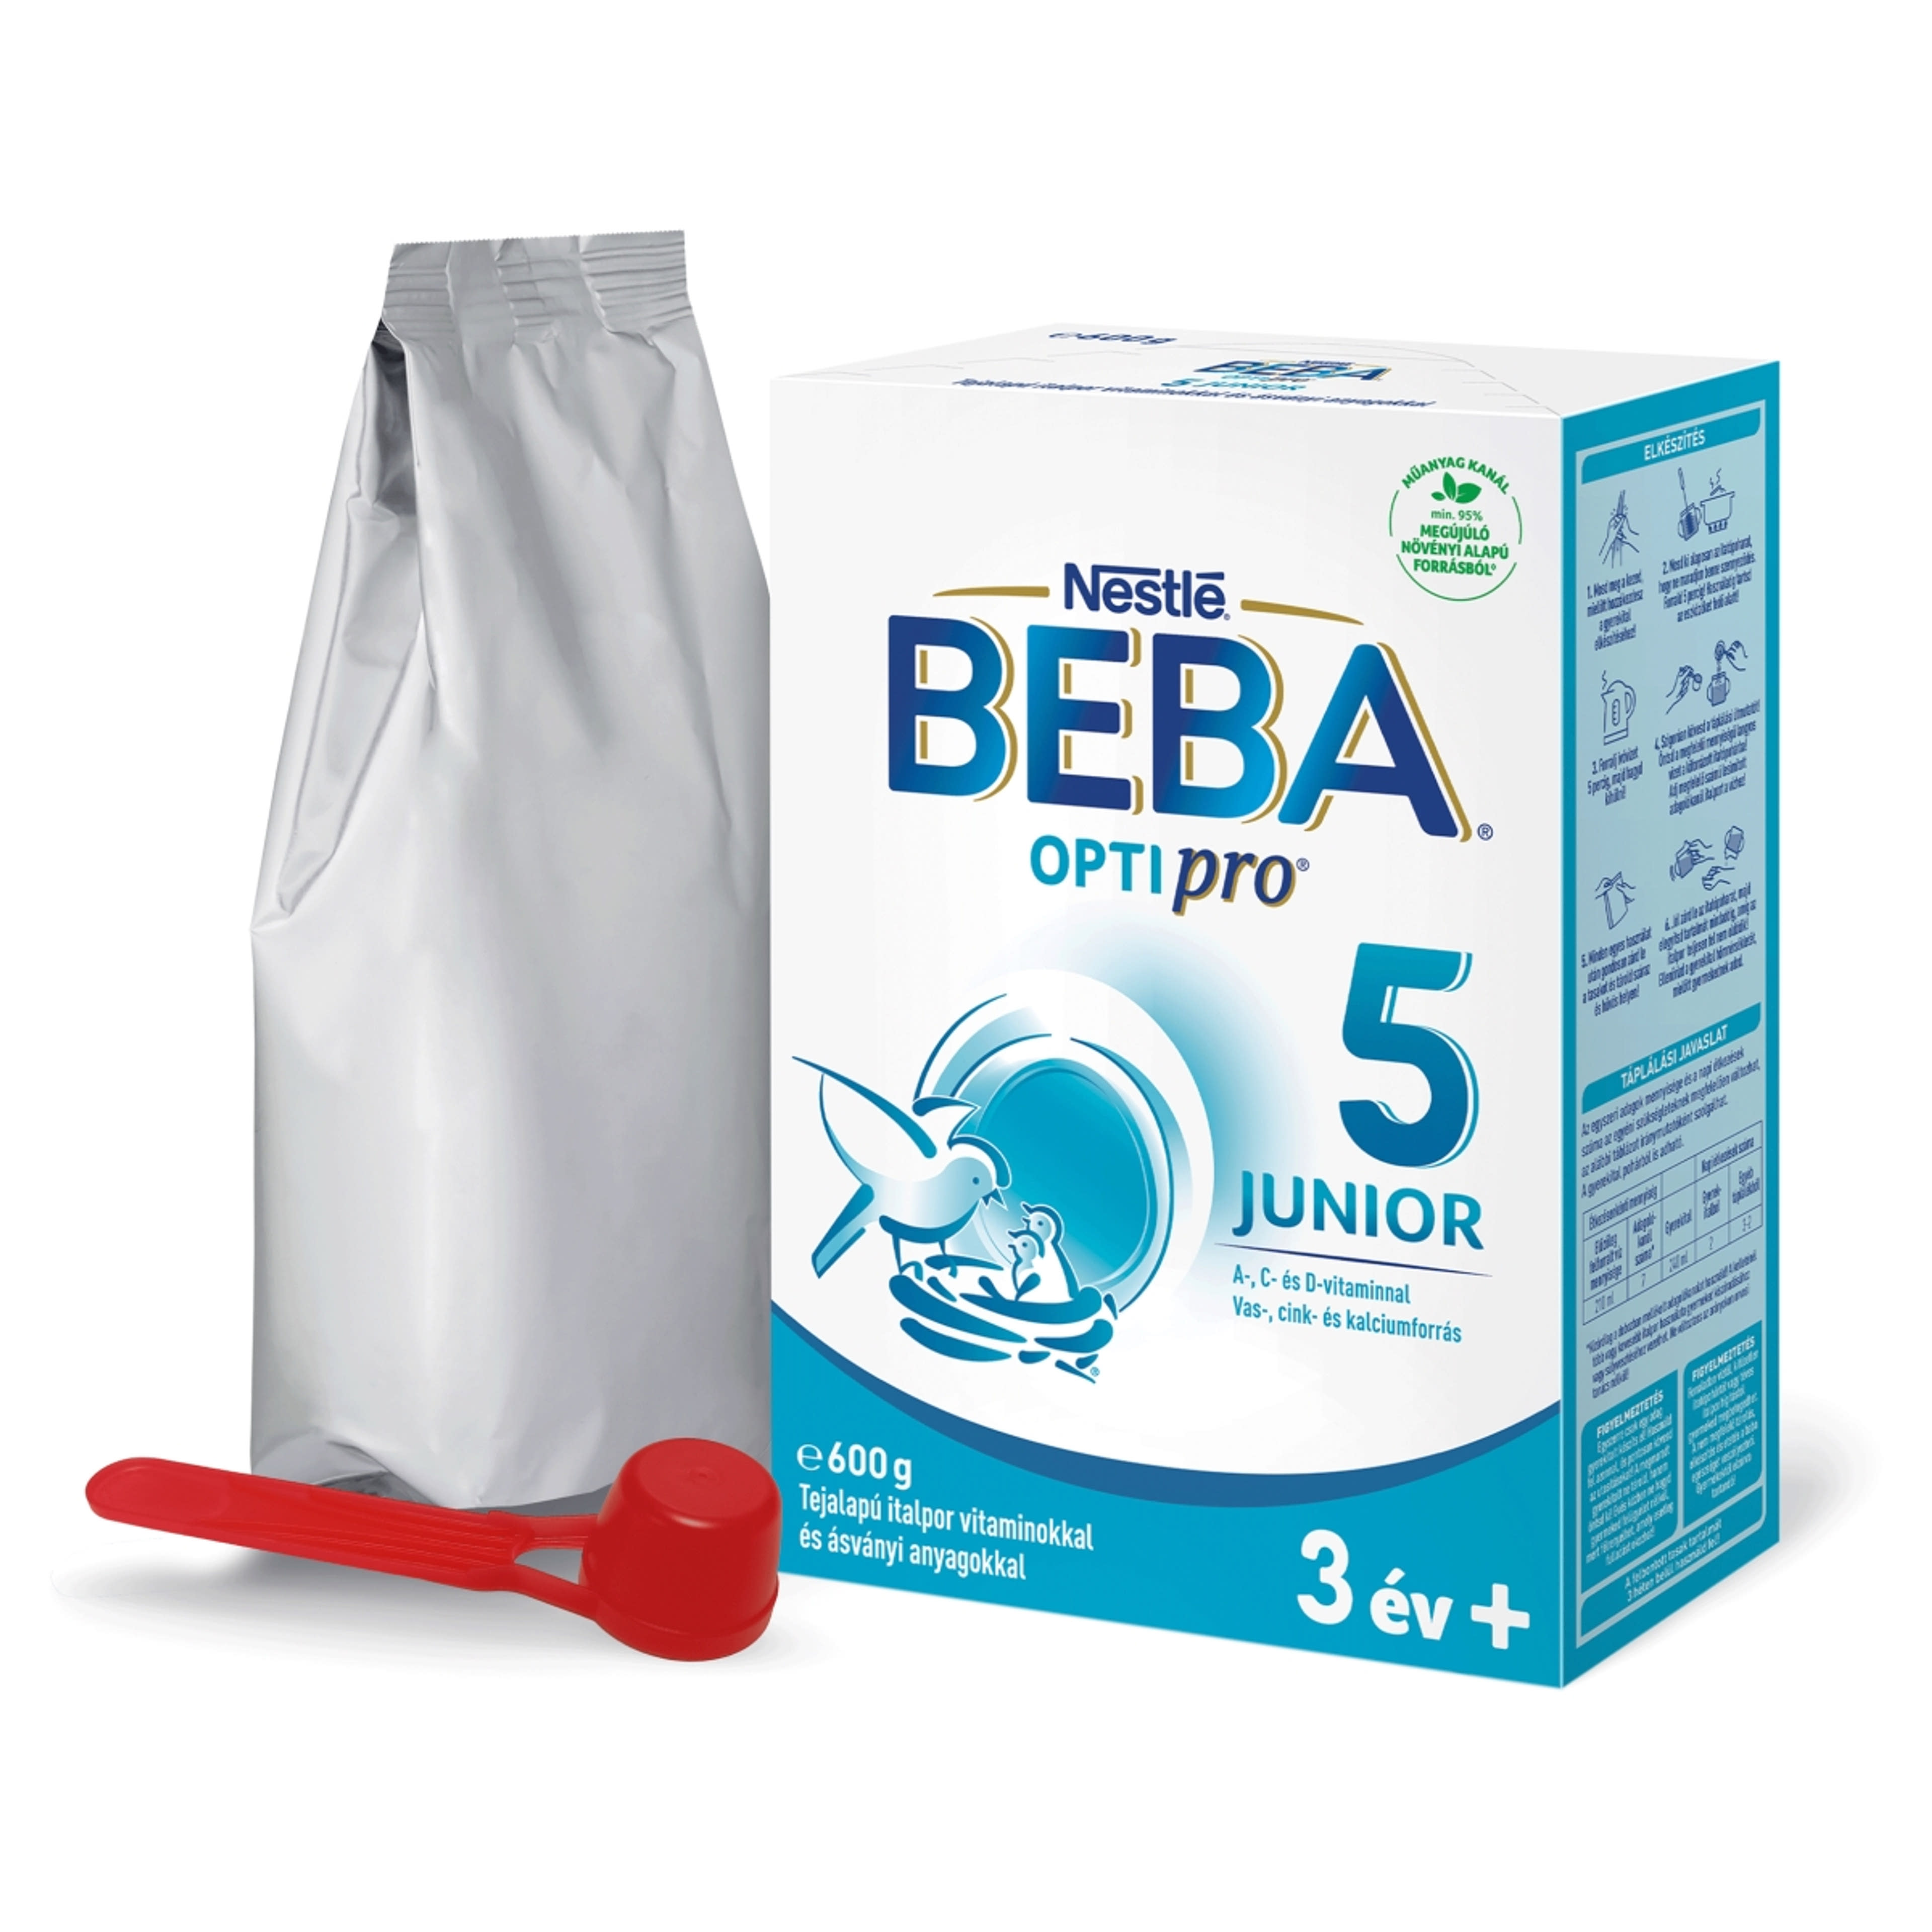 Beba Optipro 5 Junior tejalapú italpor vitaminokkal és ásványi anyagokkal 36 hónapos kortól - 600 g-2